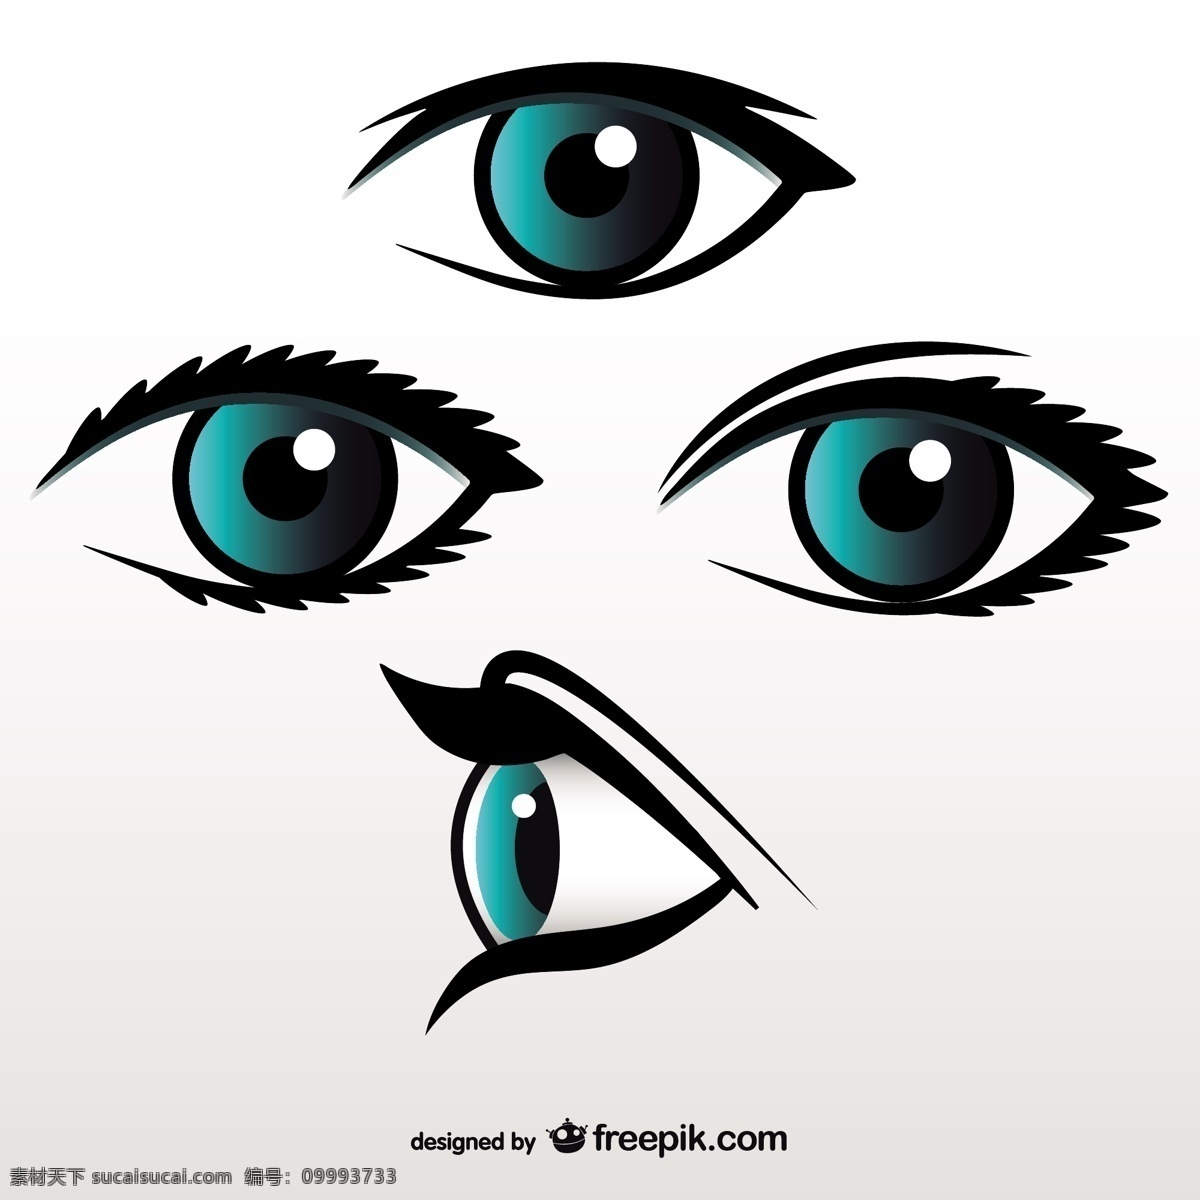 蓝眼睛的集合 标识 图标 健康 标志设计 眼睛 艺术 图形 人 平面设计 医学 插图 设计元素 符号 视觉 图标集 元素 白色